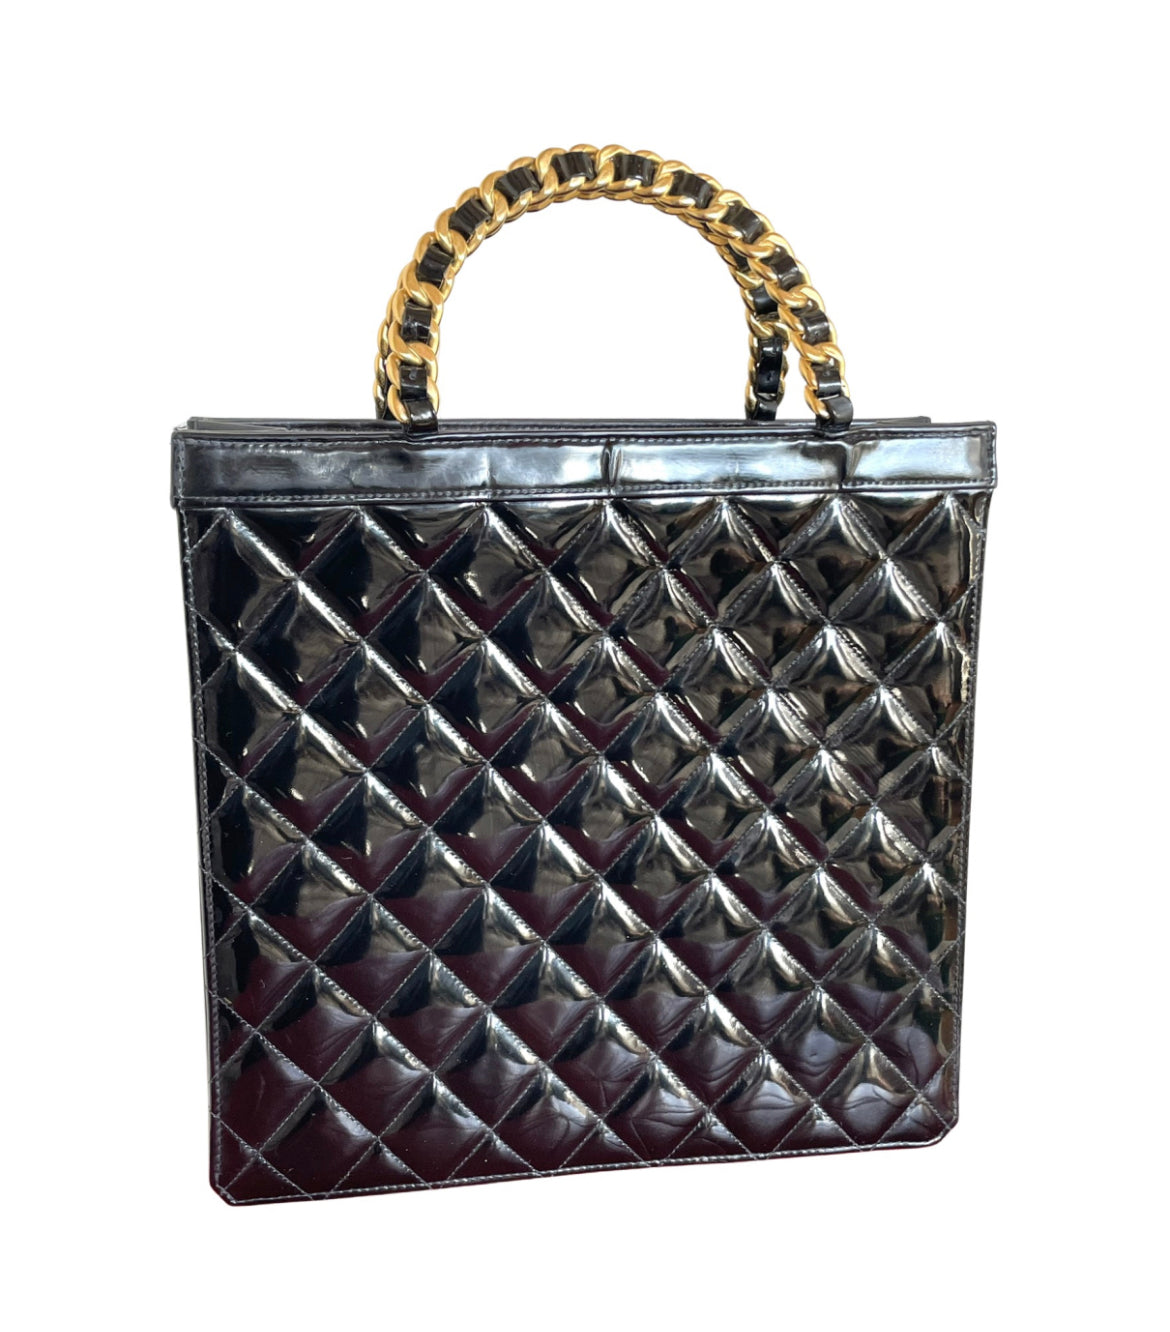 Vintage CHANEL black matelasse enamel shopper bag with golden